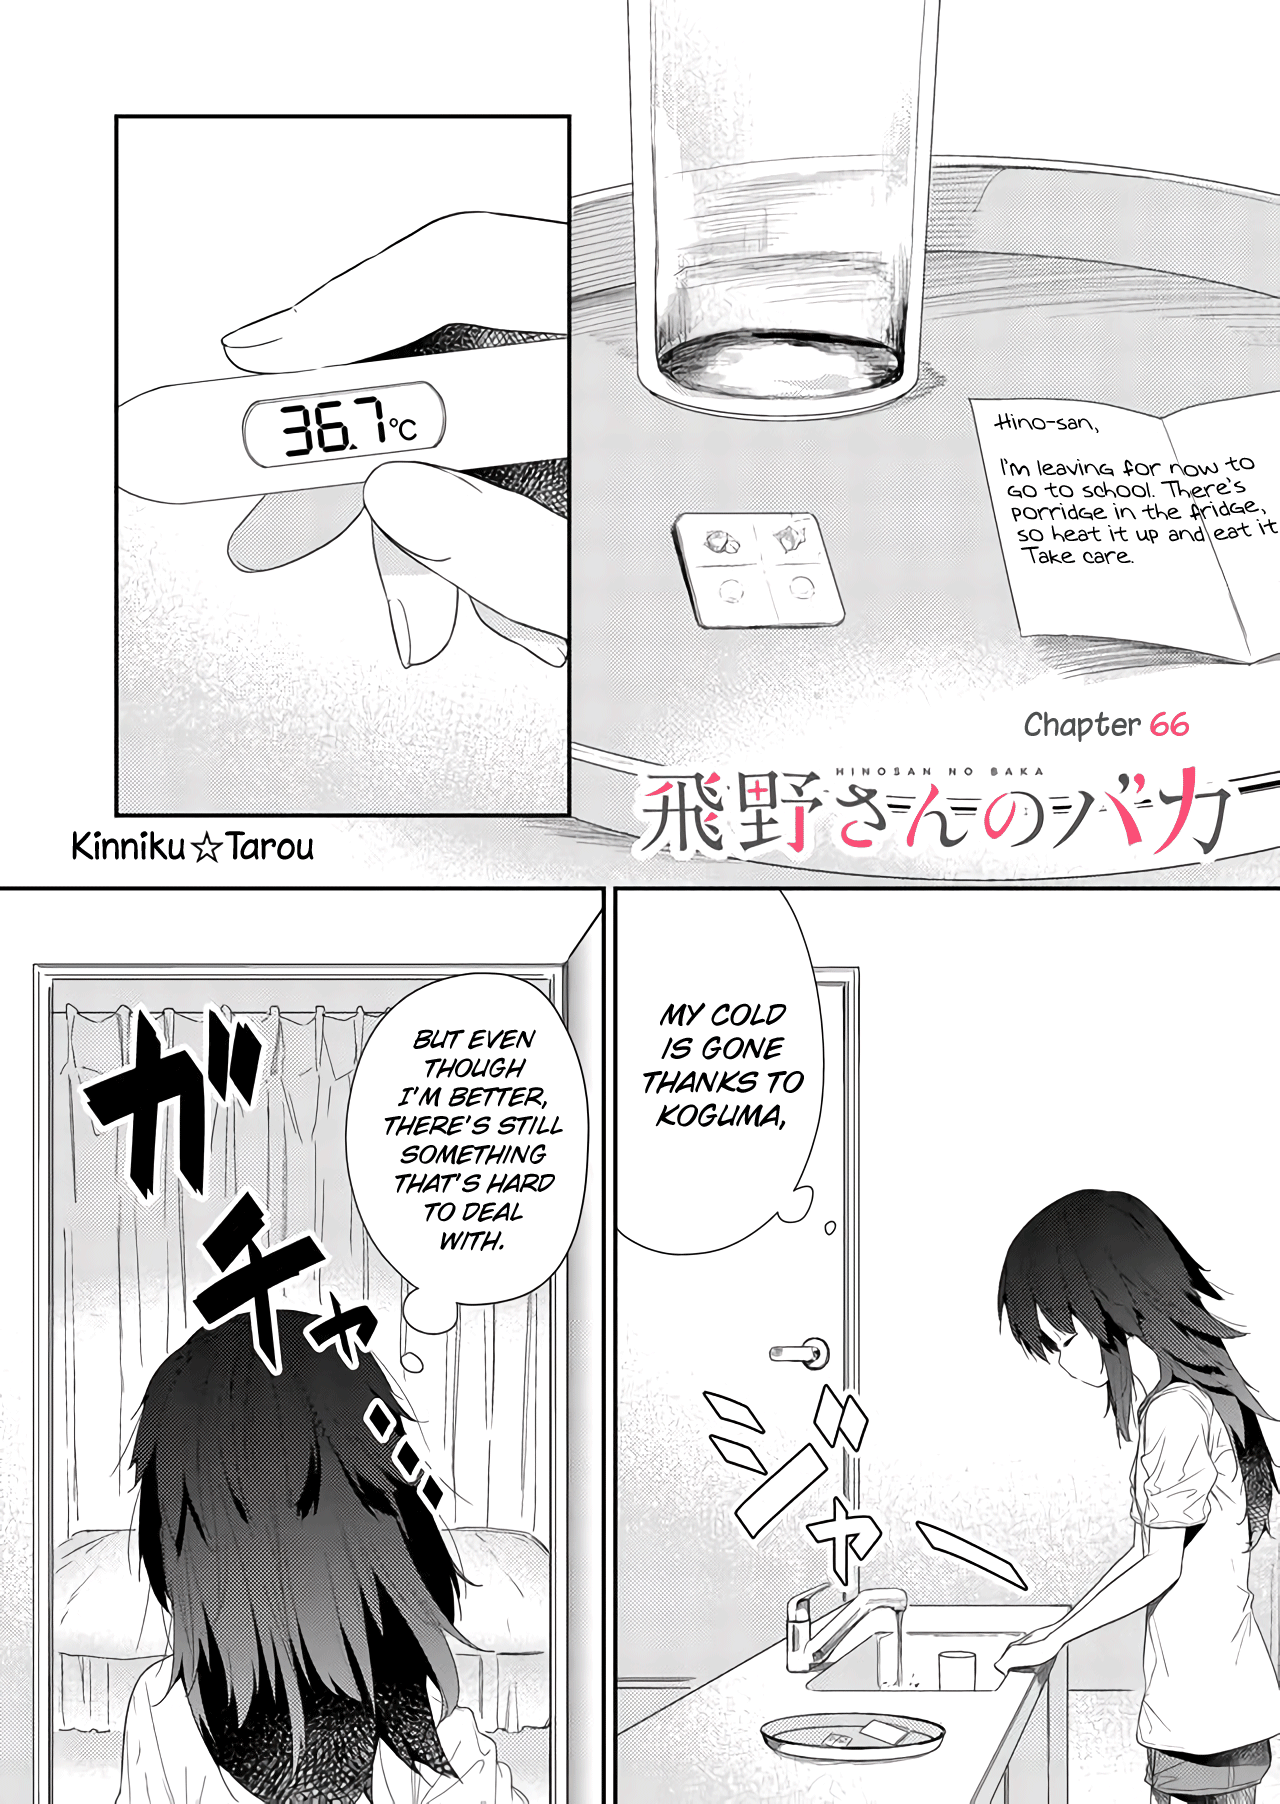 Hino-San No Baka - Page 1